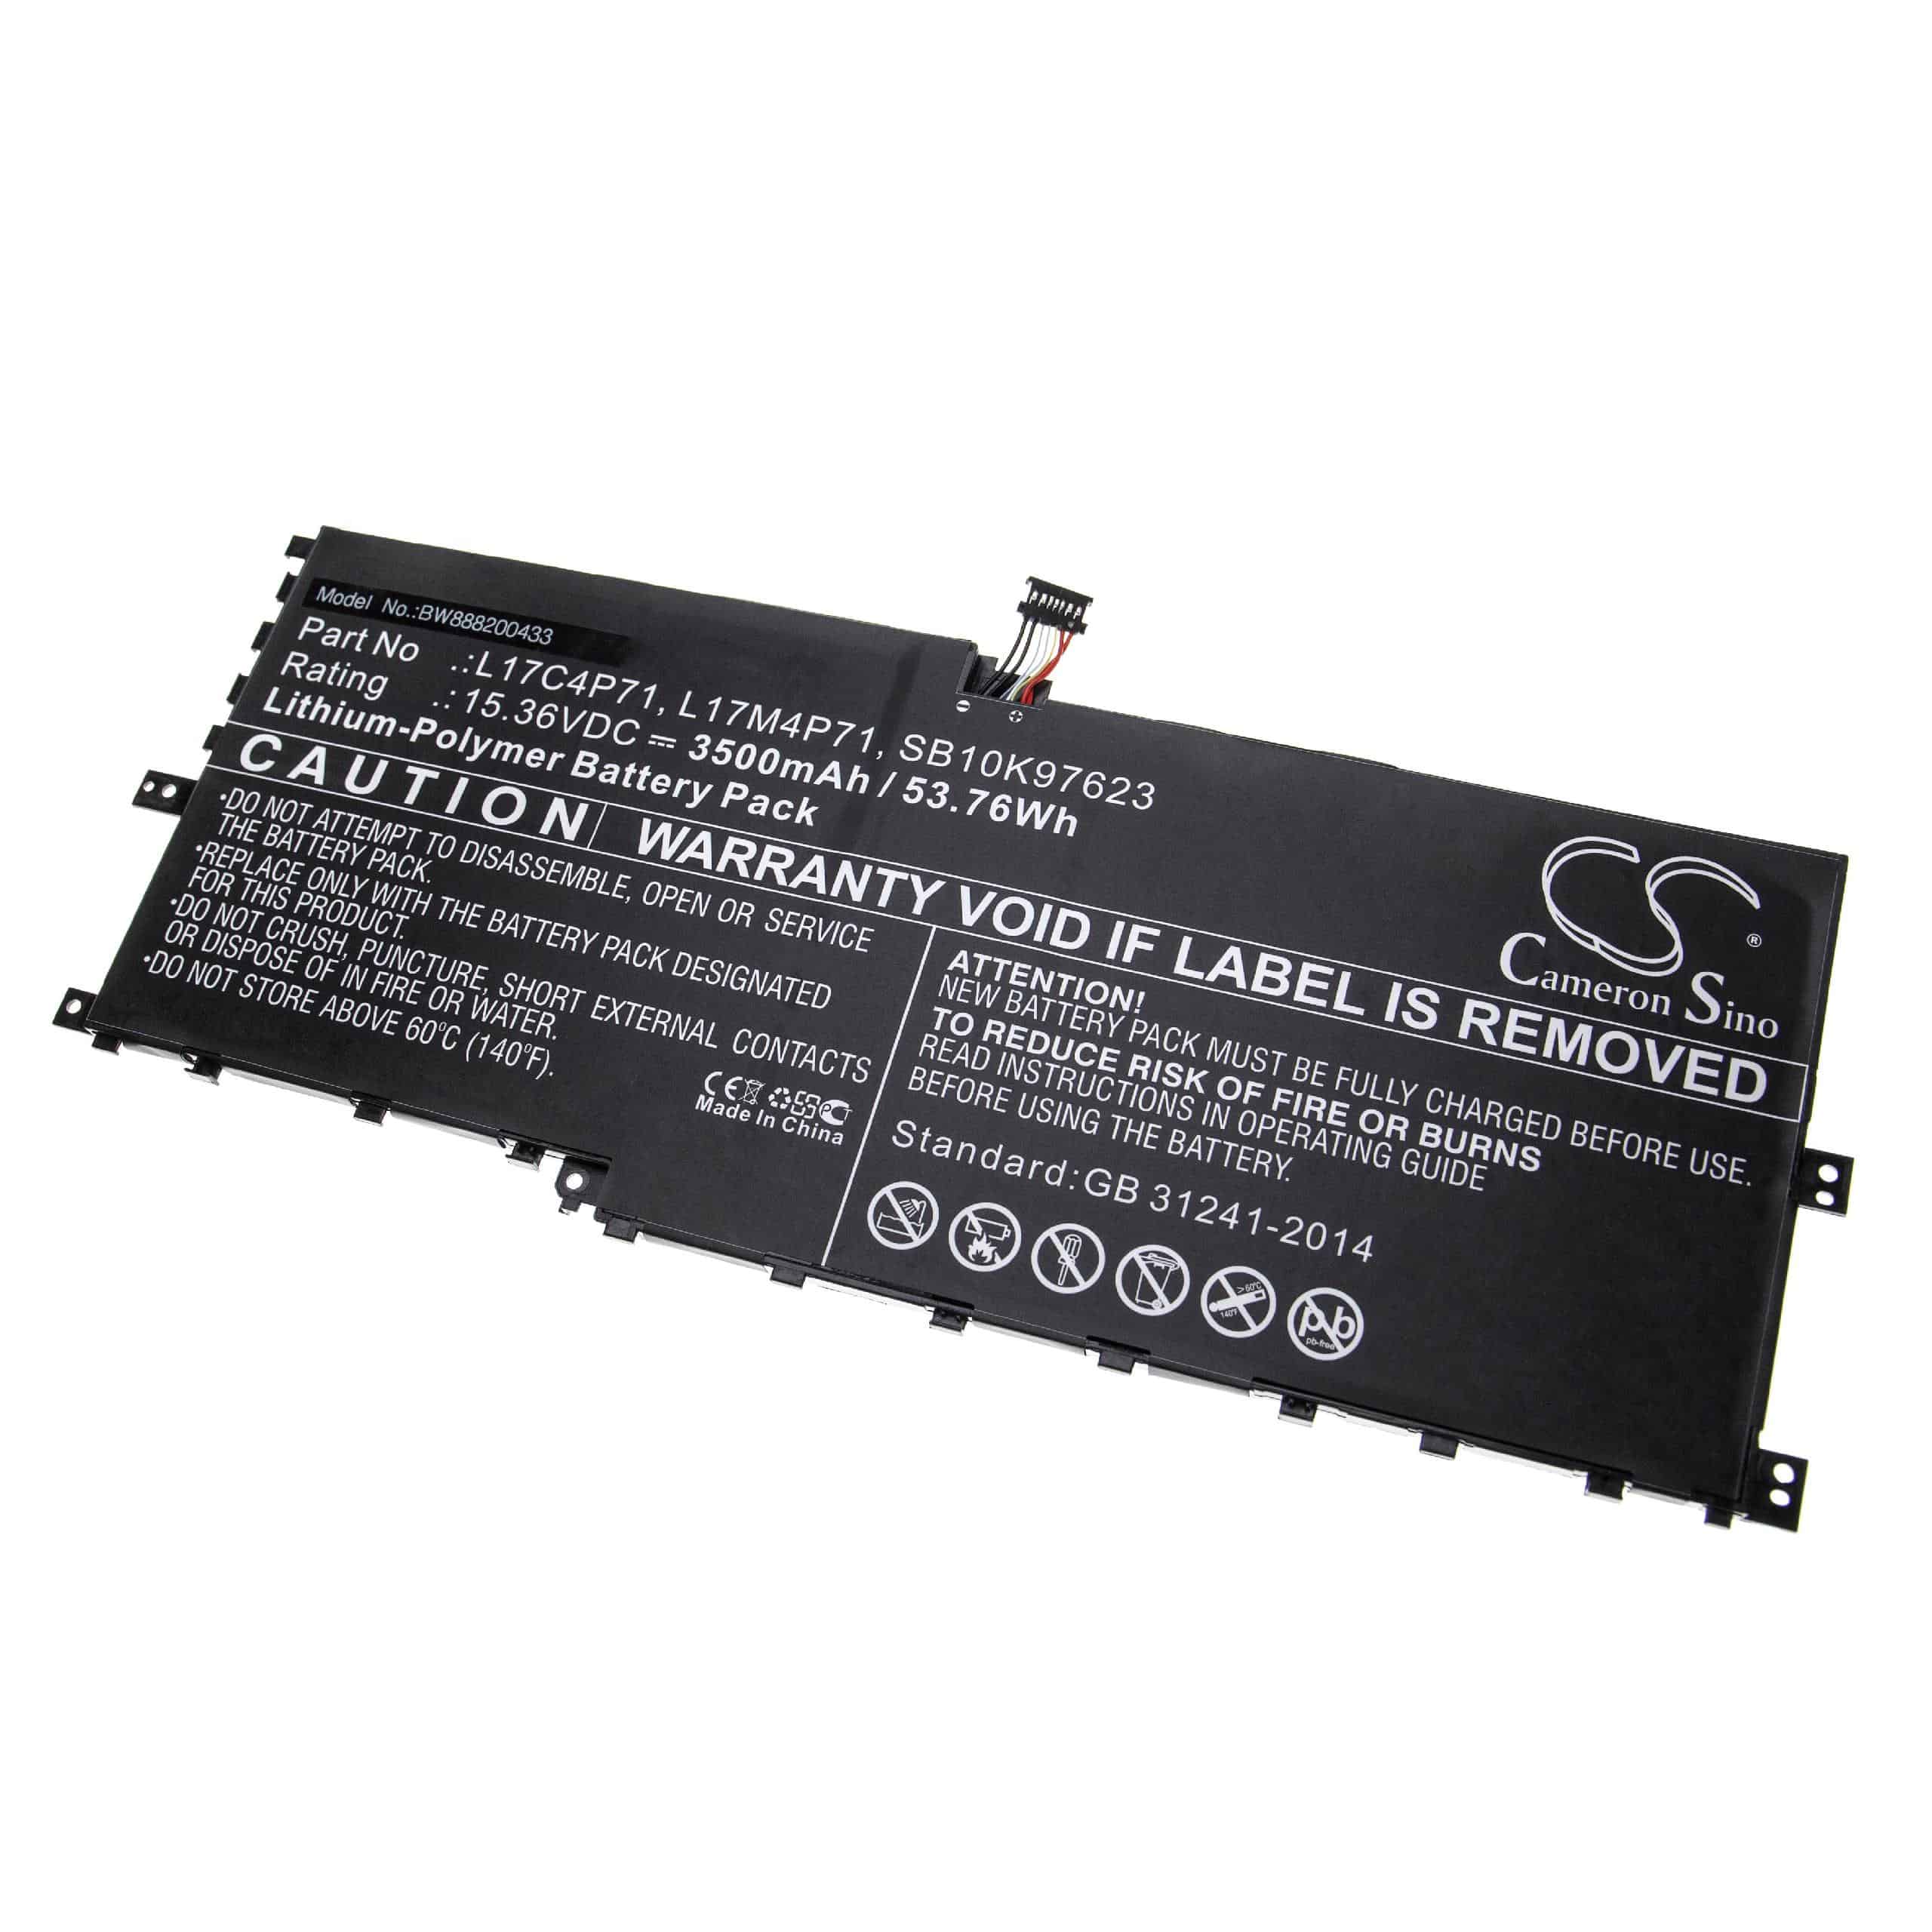 Notebook Battery Replacement for Lenovo L17C4P71, L17M4P71, 01AV474, 01AV475 - 3500mAh 15.36V Li-polymer